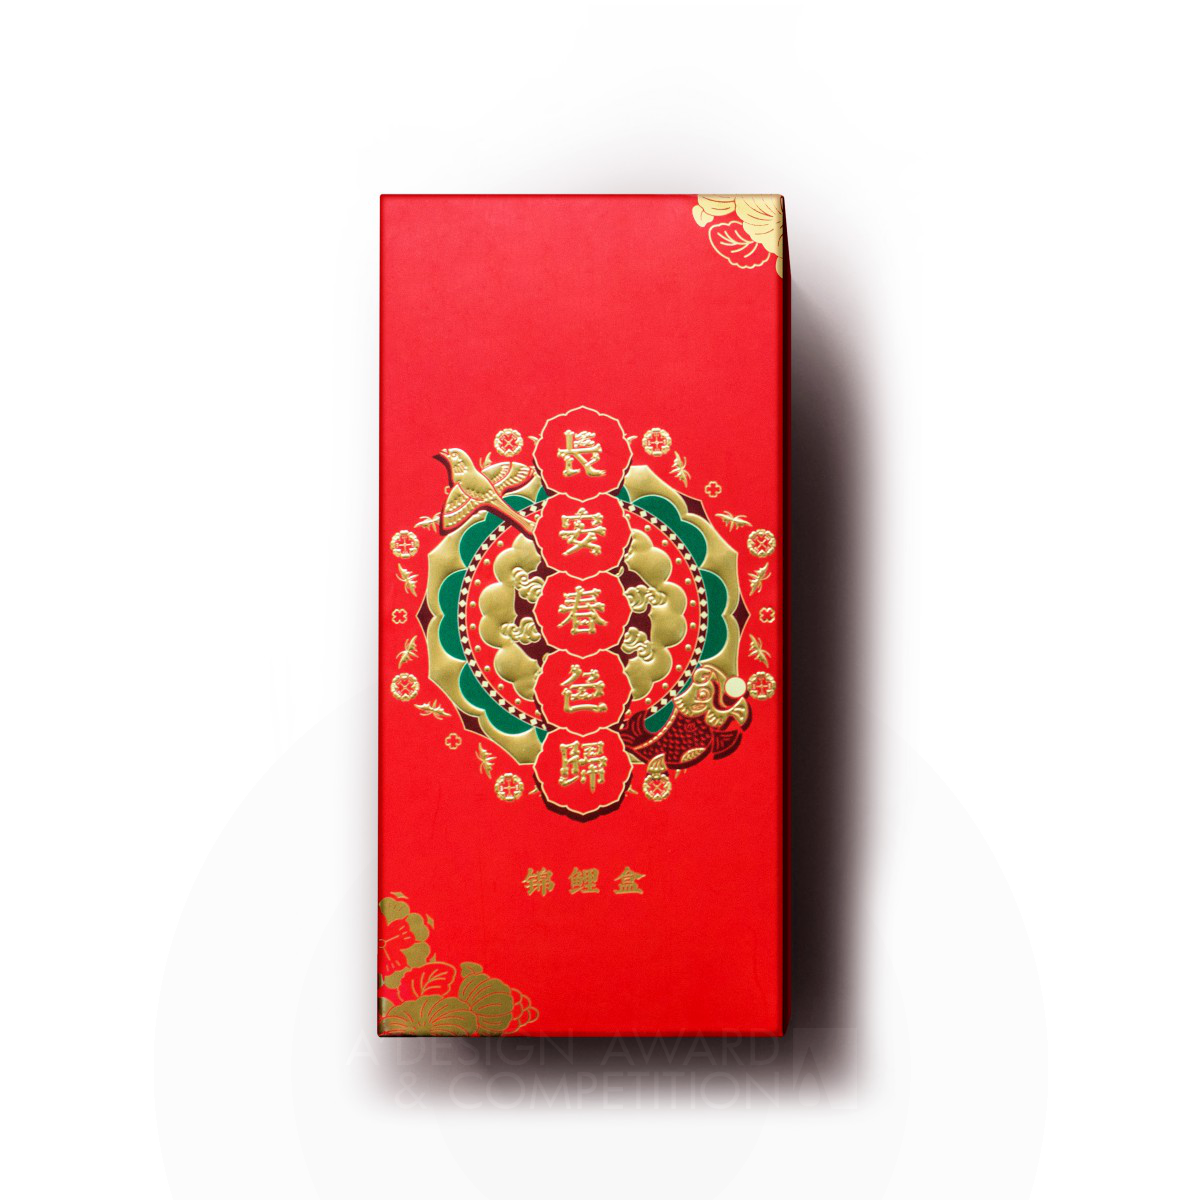 The Spring of Chang'an Chinese New Year Gift Box by Chen Yao,Chen Xinjie,Li Wangguan